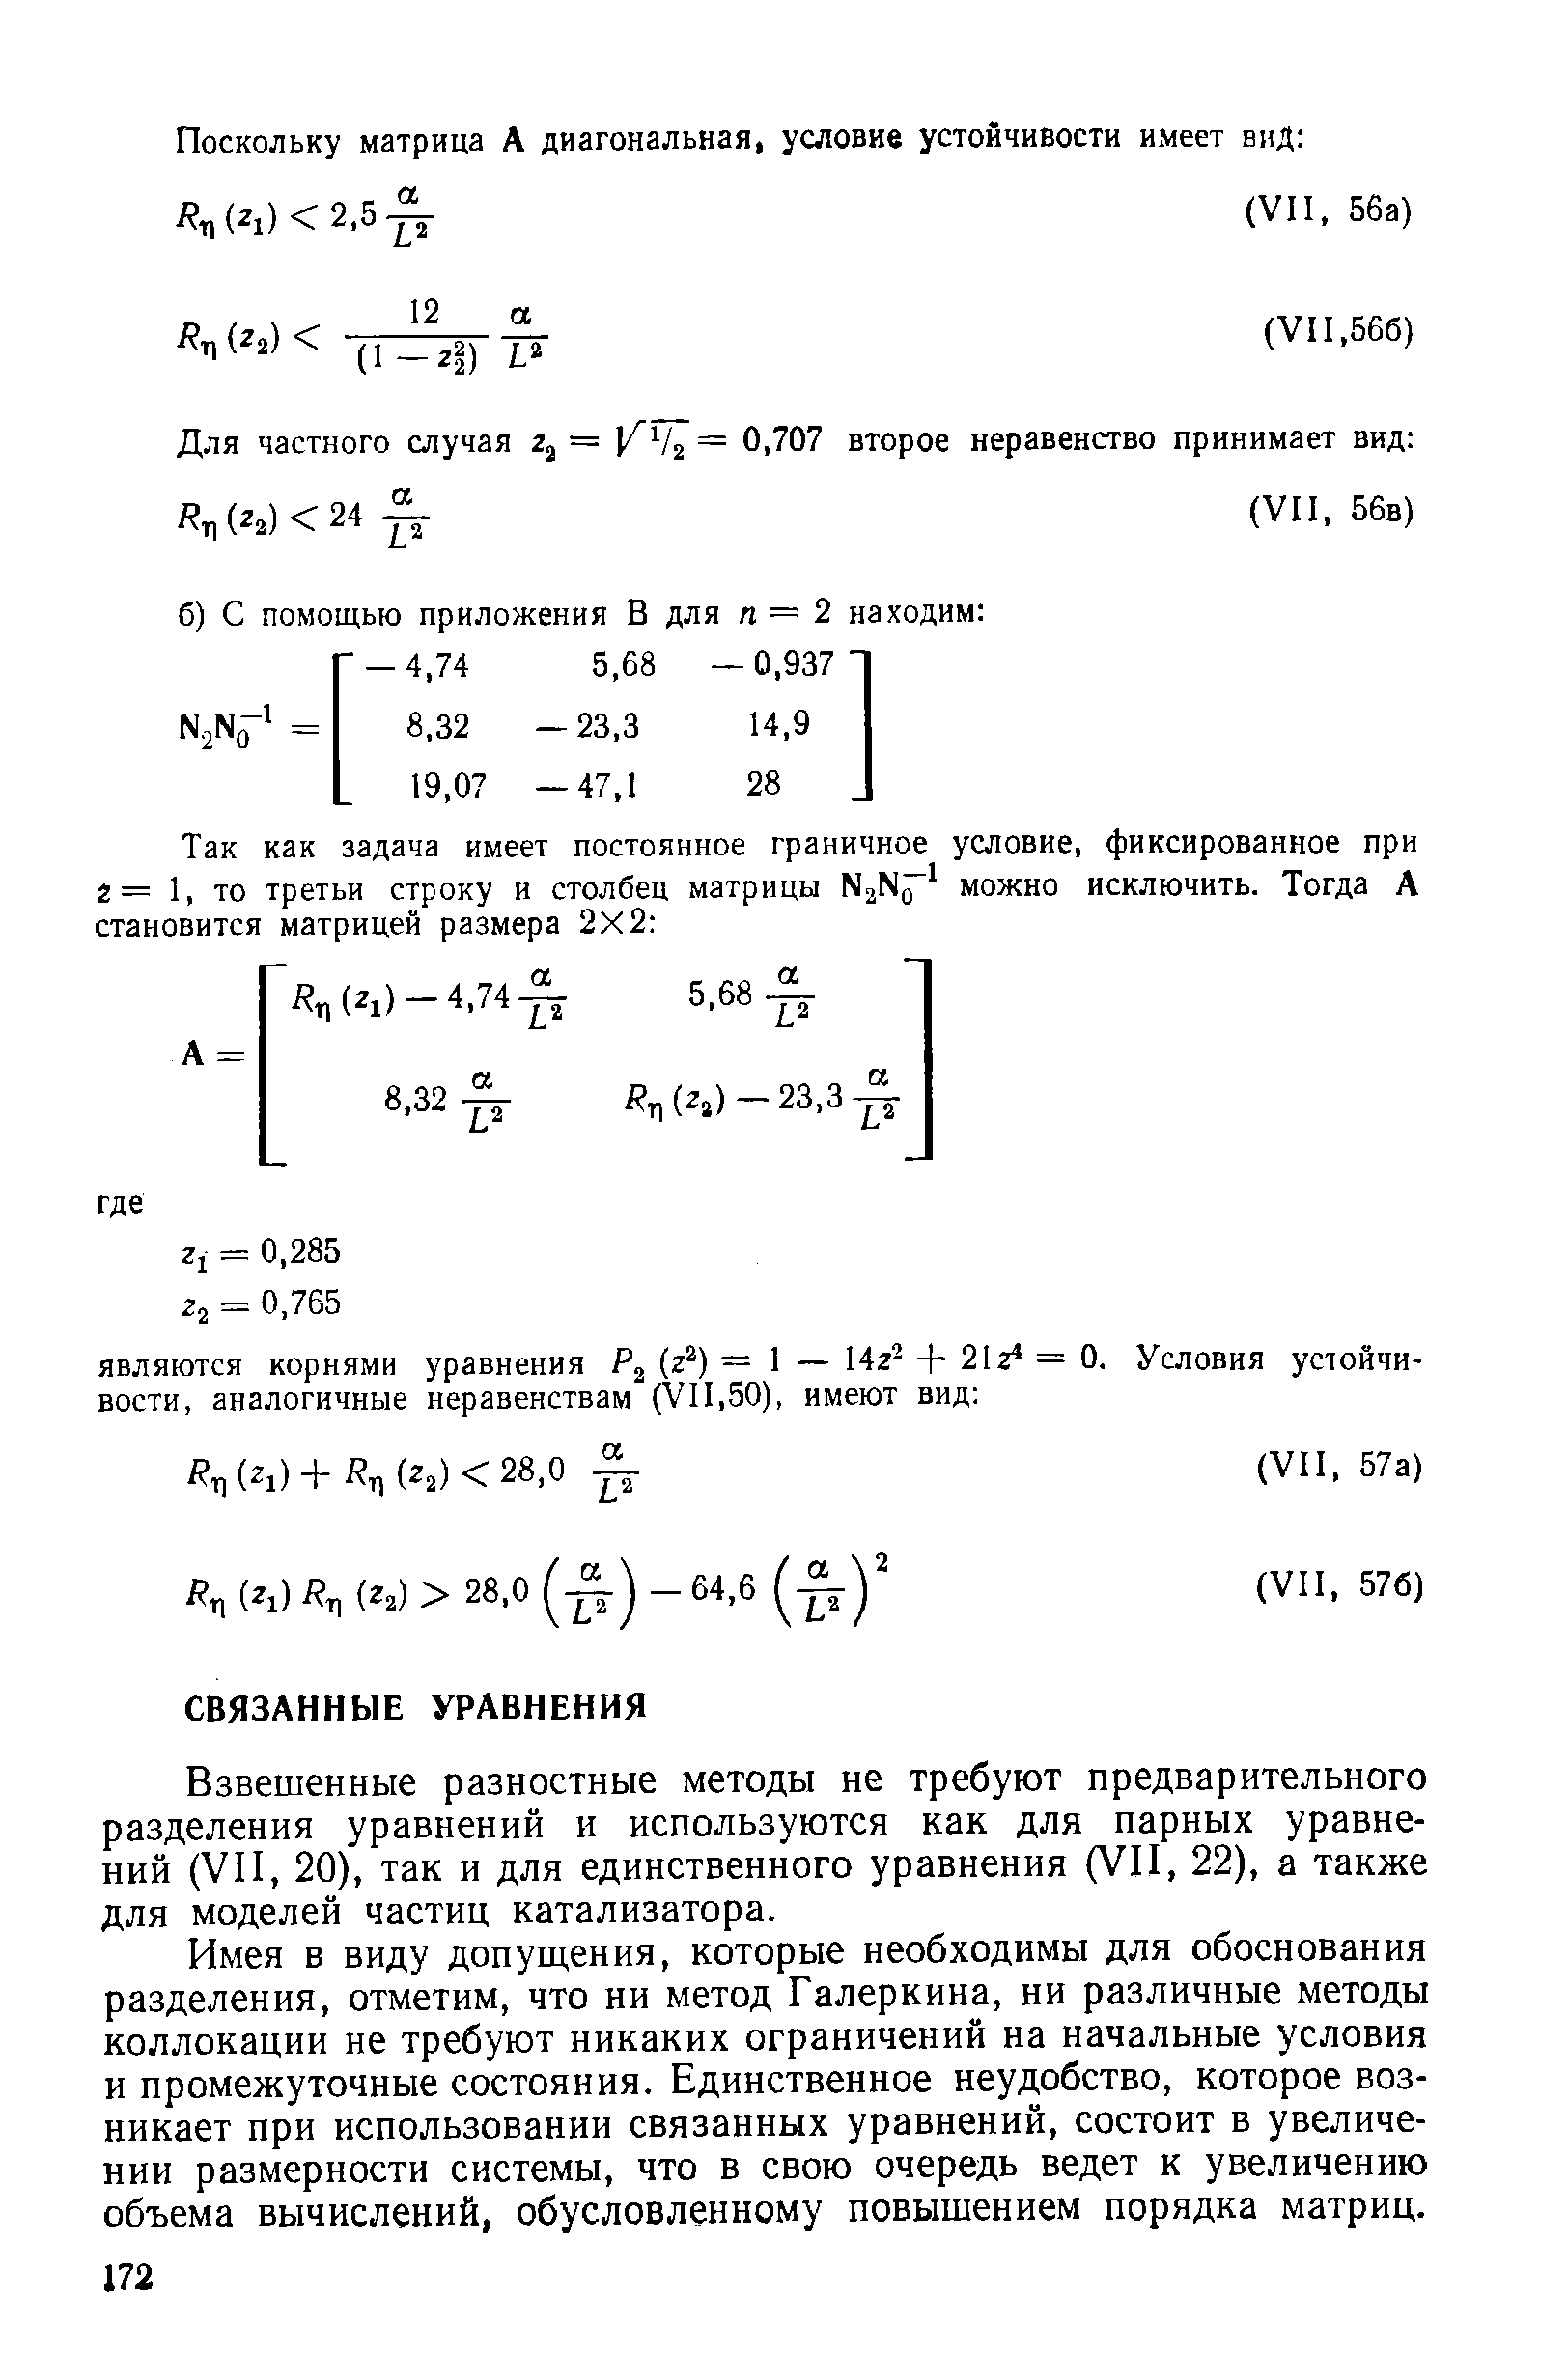 Взвешенные разностные методы не требуют предварительного разделения уравнений и используются как для парных уравнений (VII, 20), так и для единственного уравнения (VII, 22), а также для моделей частиц катализатора.